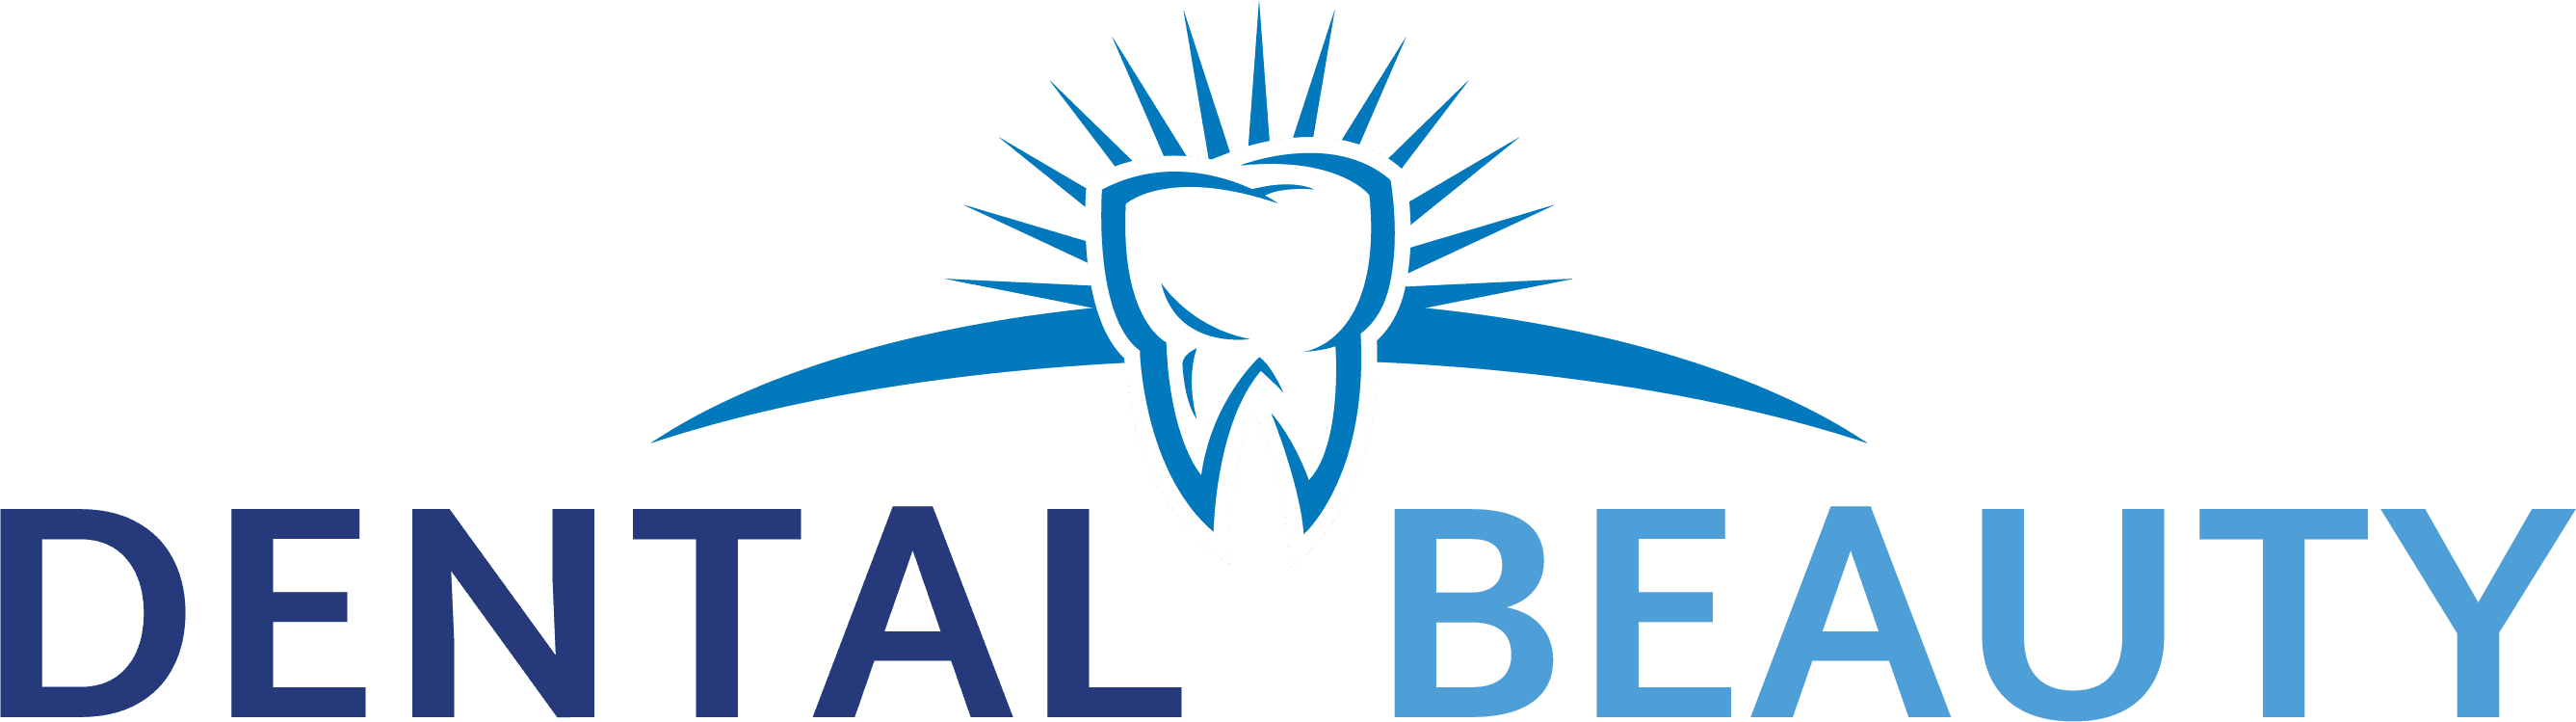 Dental Beauty - Premier Dental Office in Feasterville, PA